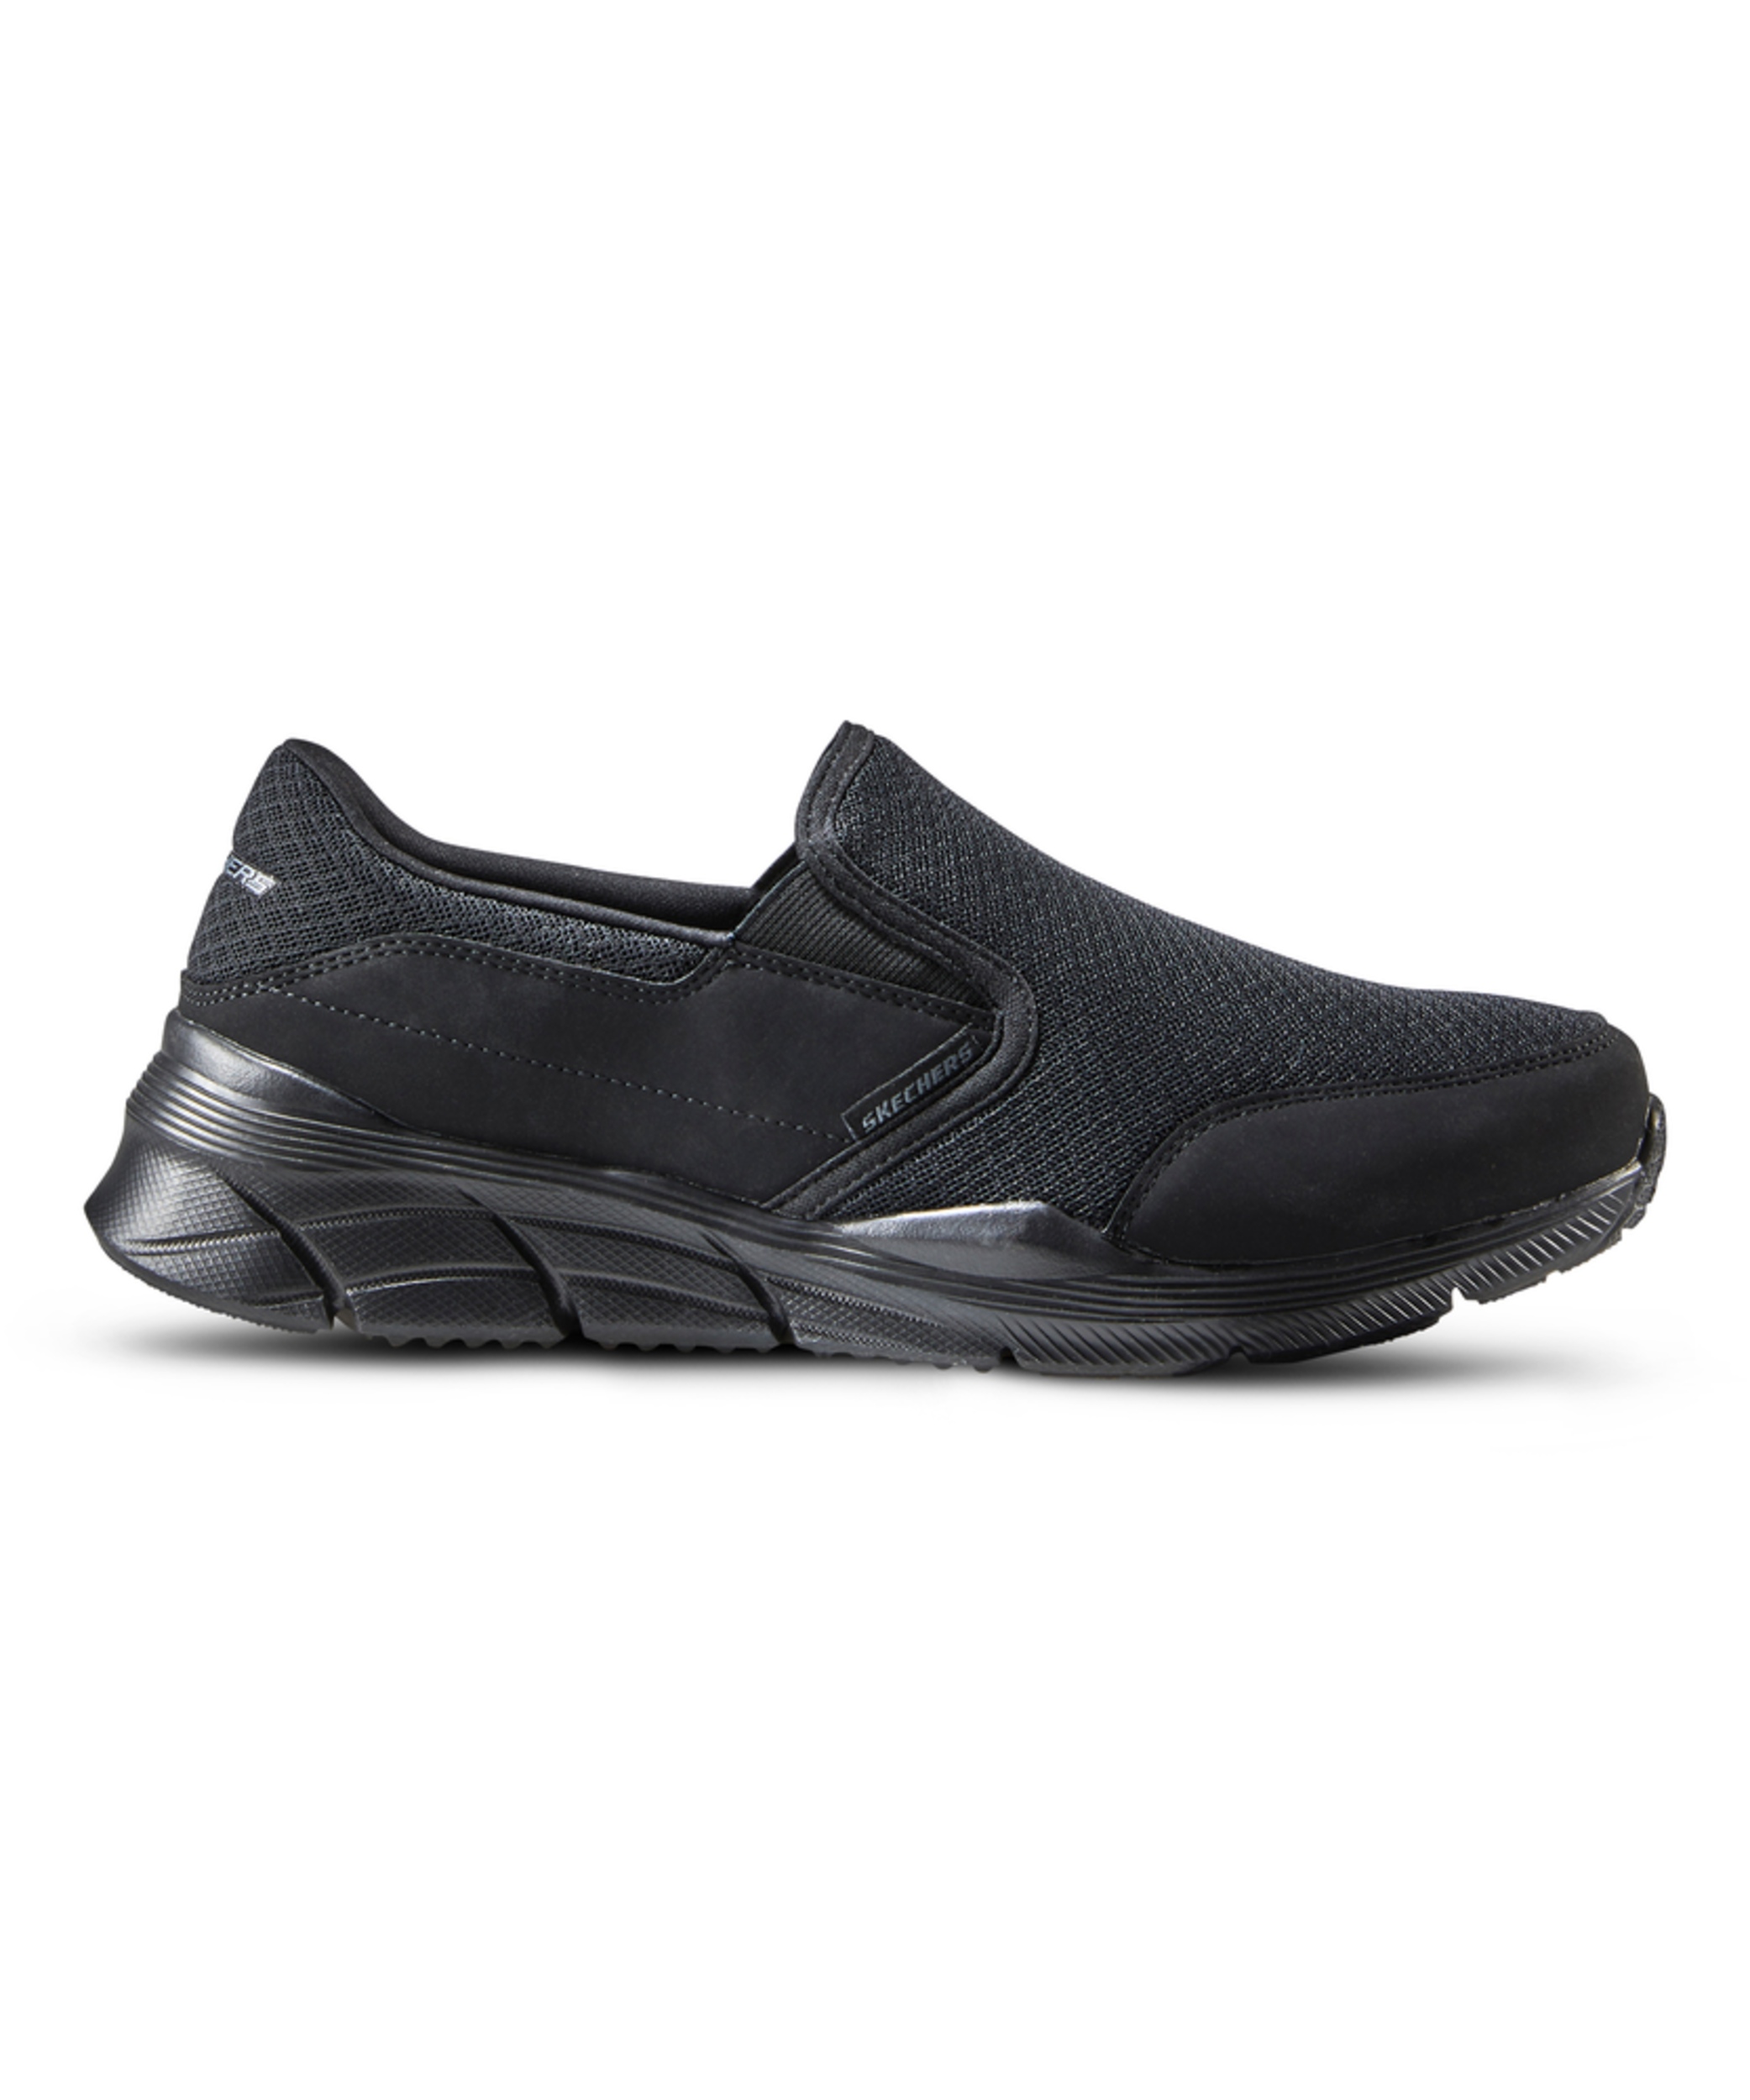 Skechers Men's Equalizer 4.0 Slip On Shoes - Black | Marks